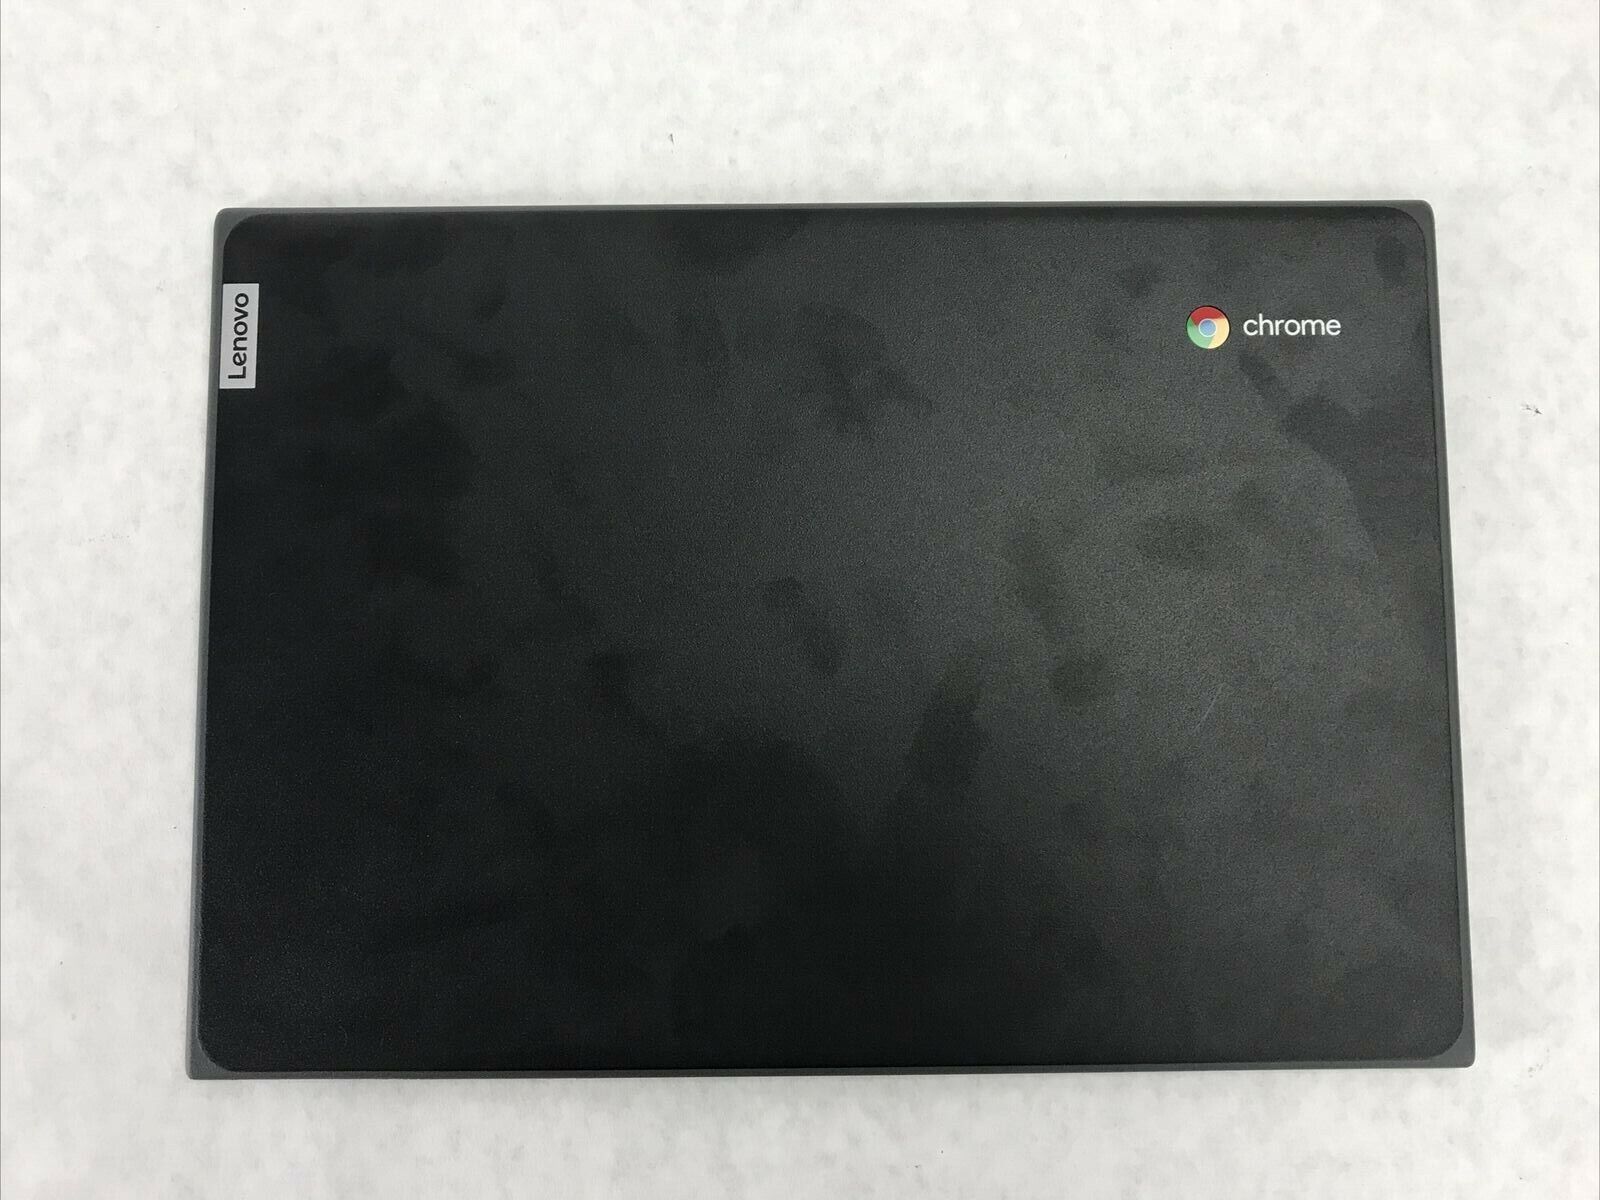 Lenovo Chromebook 100e Back Cover Casing 1109-04137